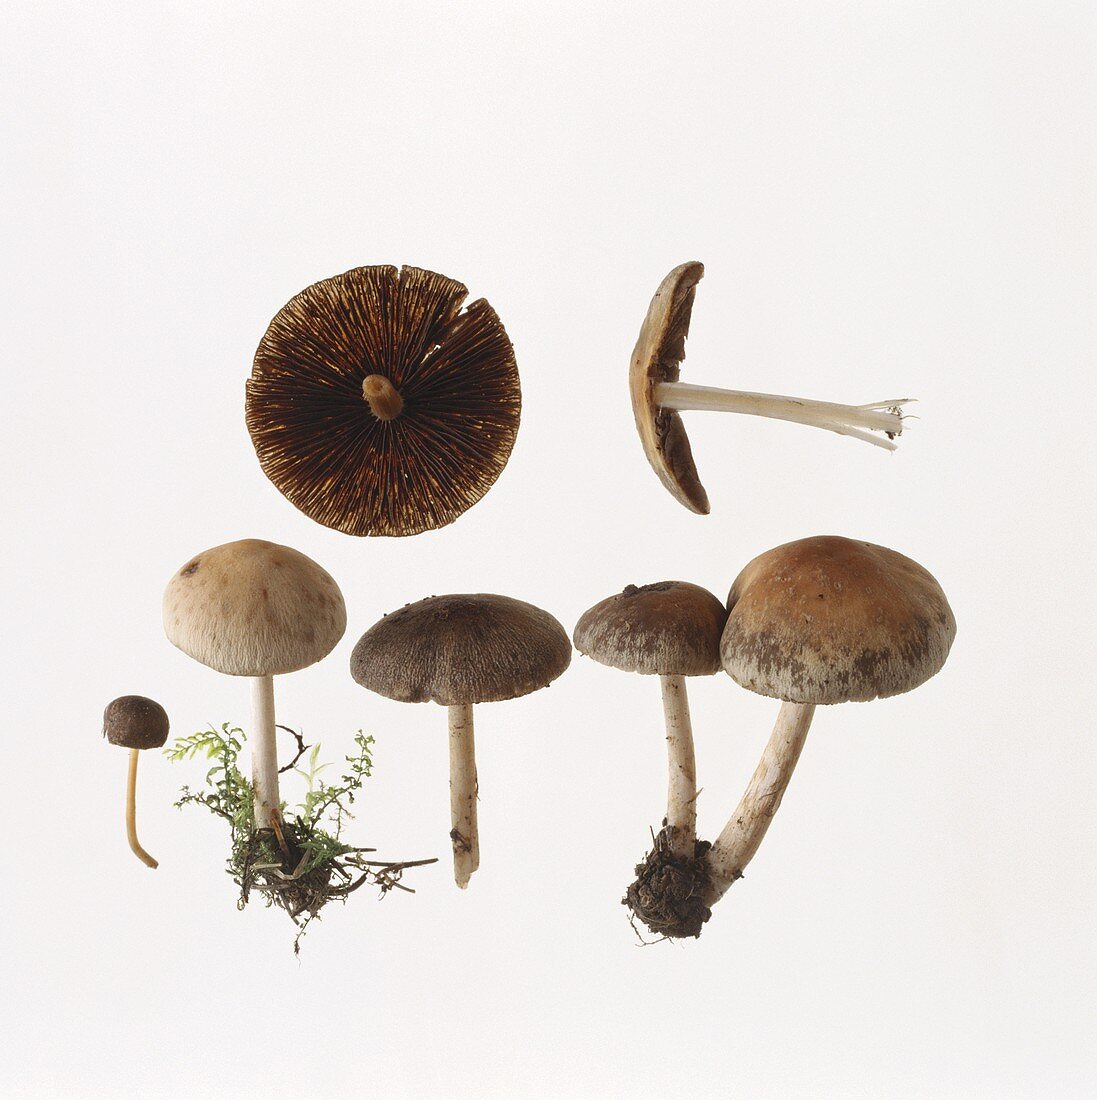 Early mushrooms (Psathyrella spadiceogrisea)